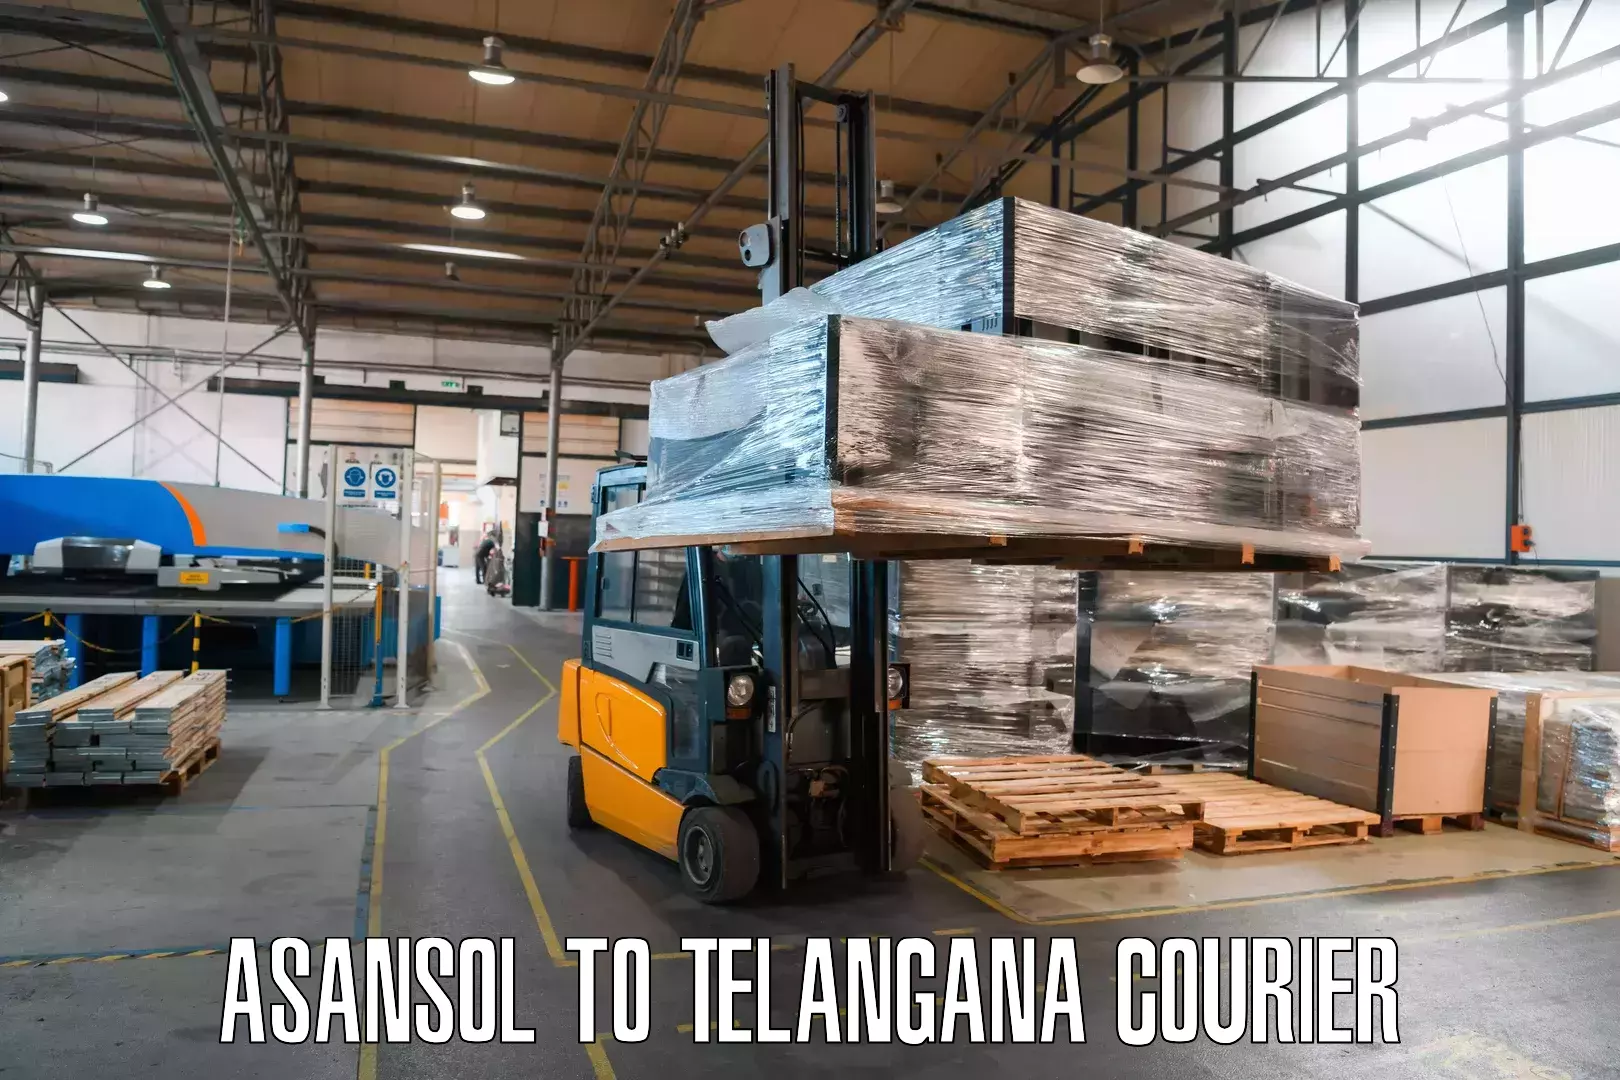 Express logistics providers Asansol to Tandur